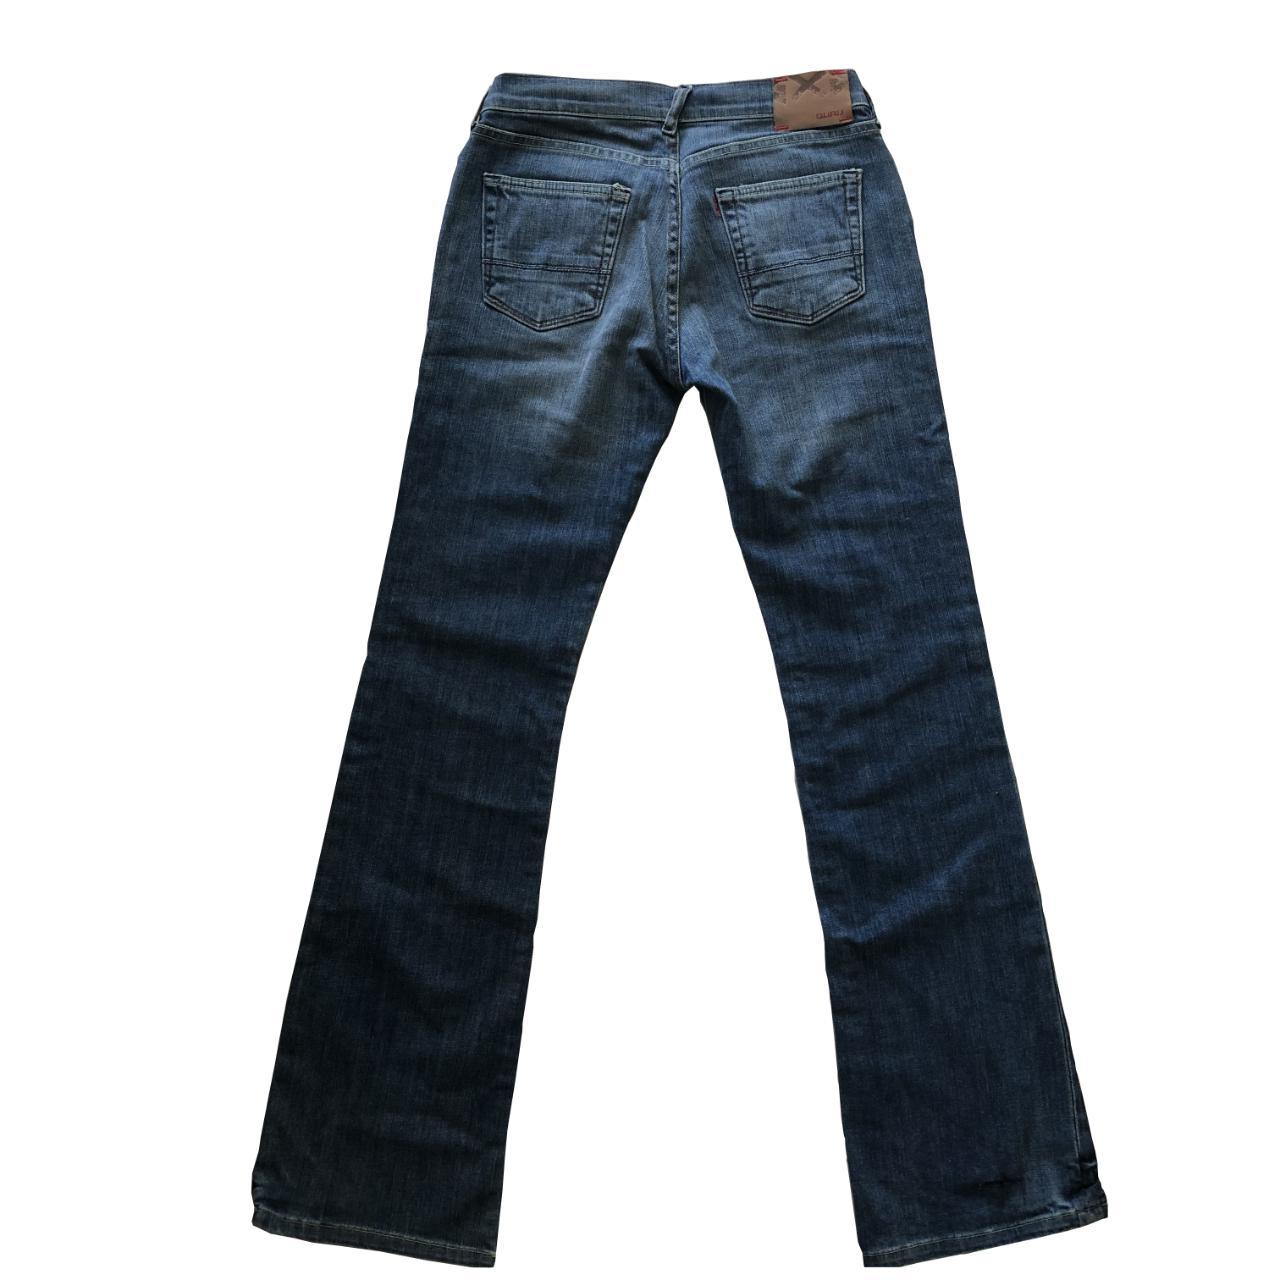 Jeans GURU Vintage #guru #vintage #jeans - Depop